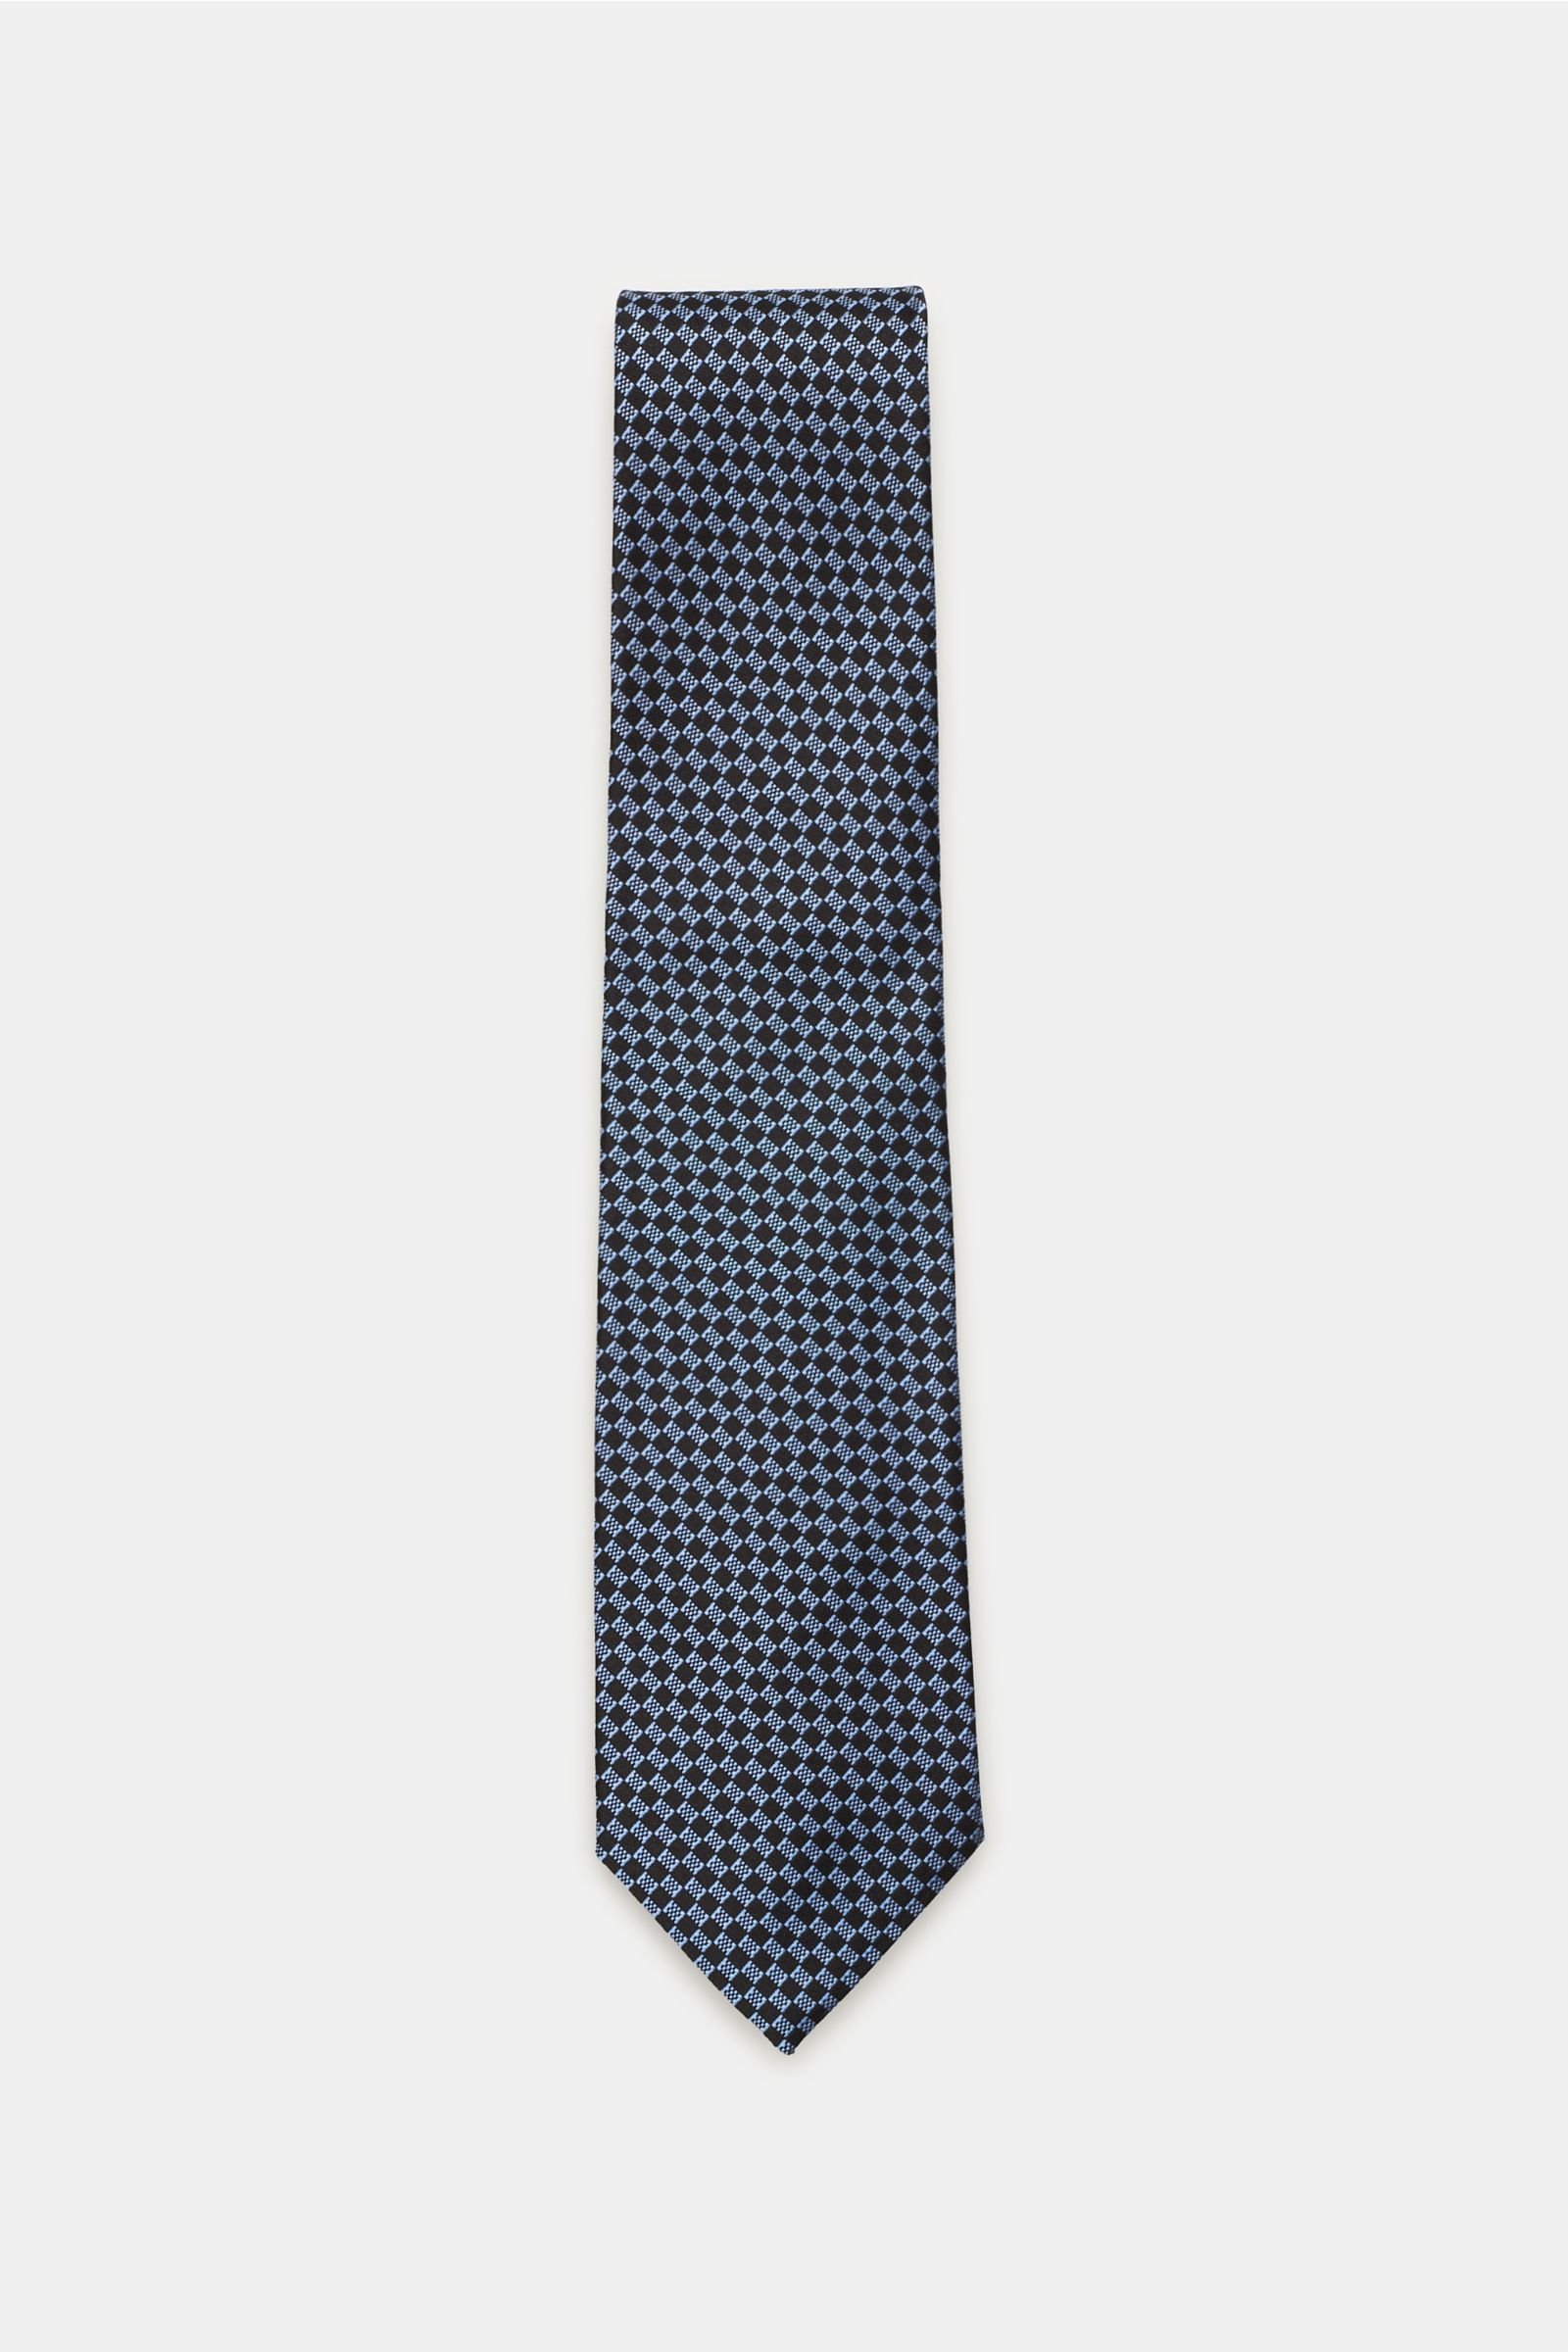 Silk tie smoky blue/black checked